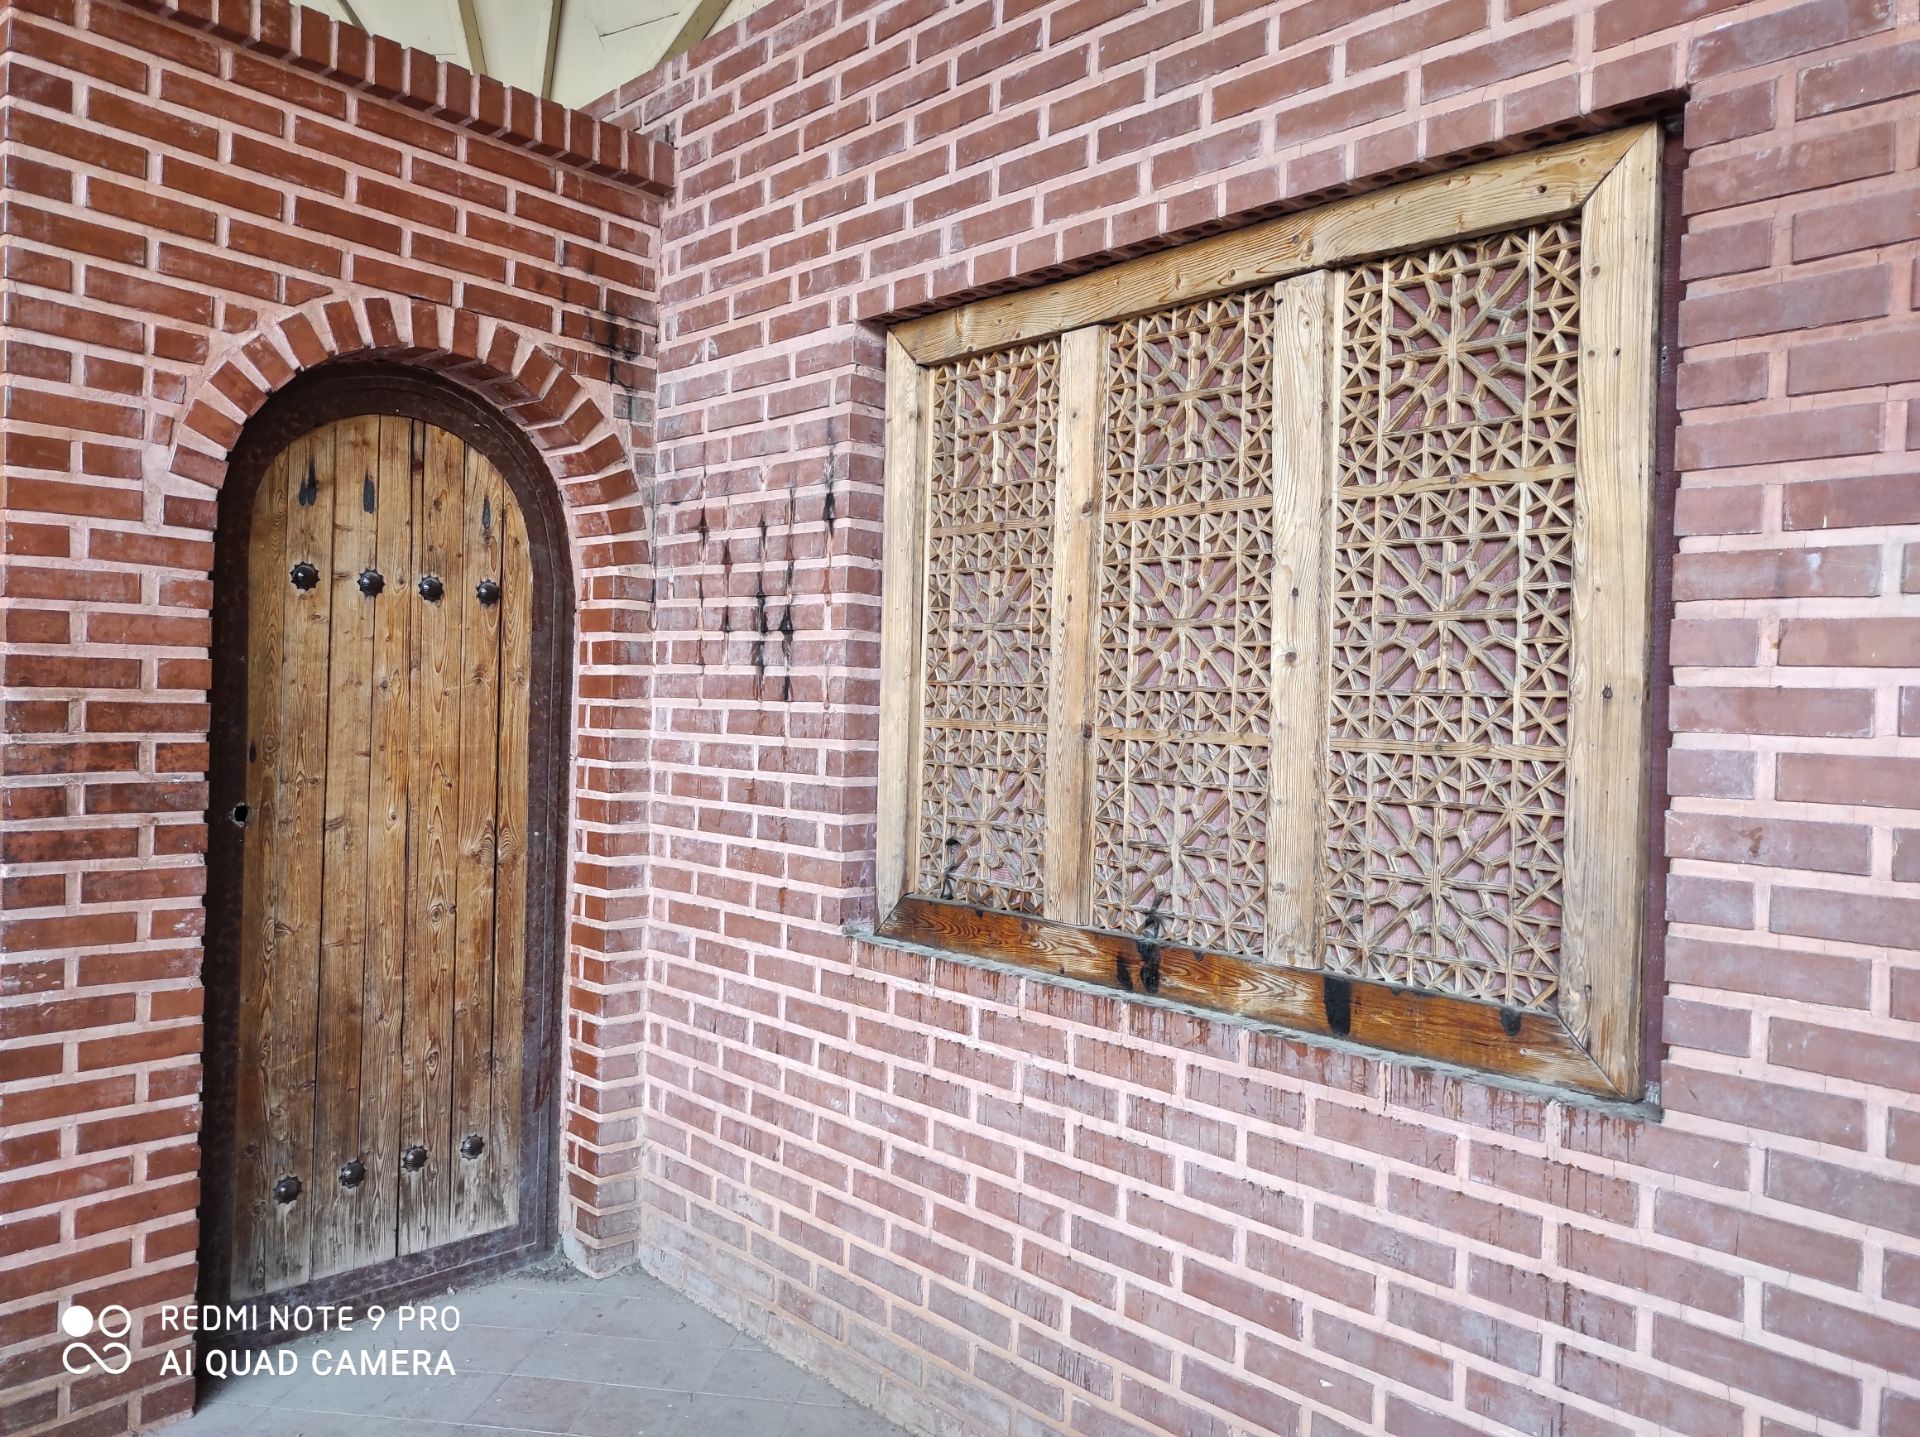 نمونه عکس ردمی نوت 9 پرو - آجرنما با در و پنجره چوبی